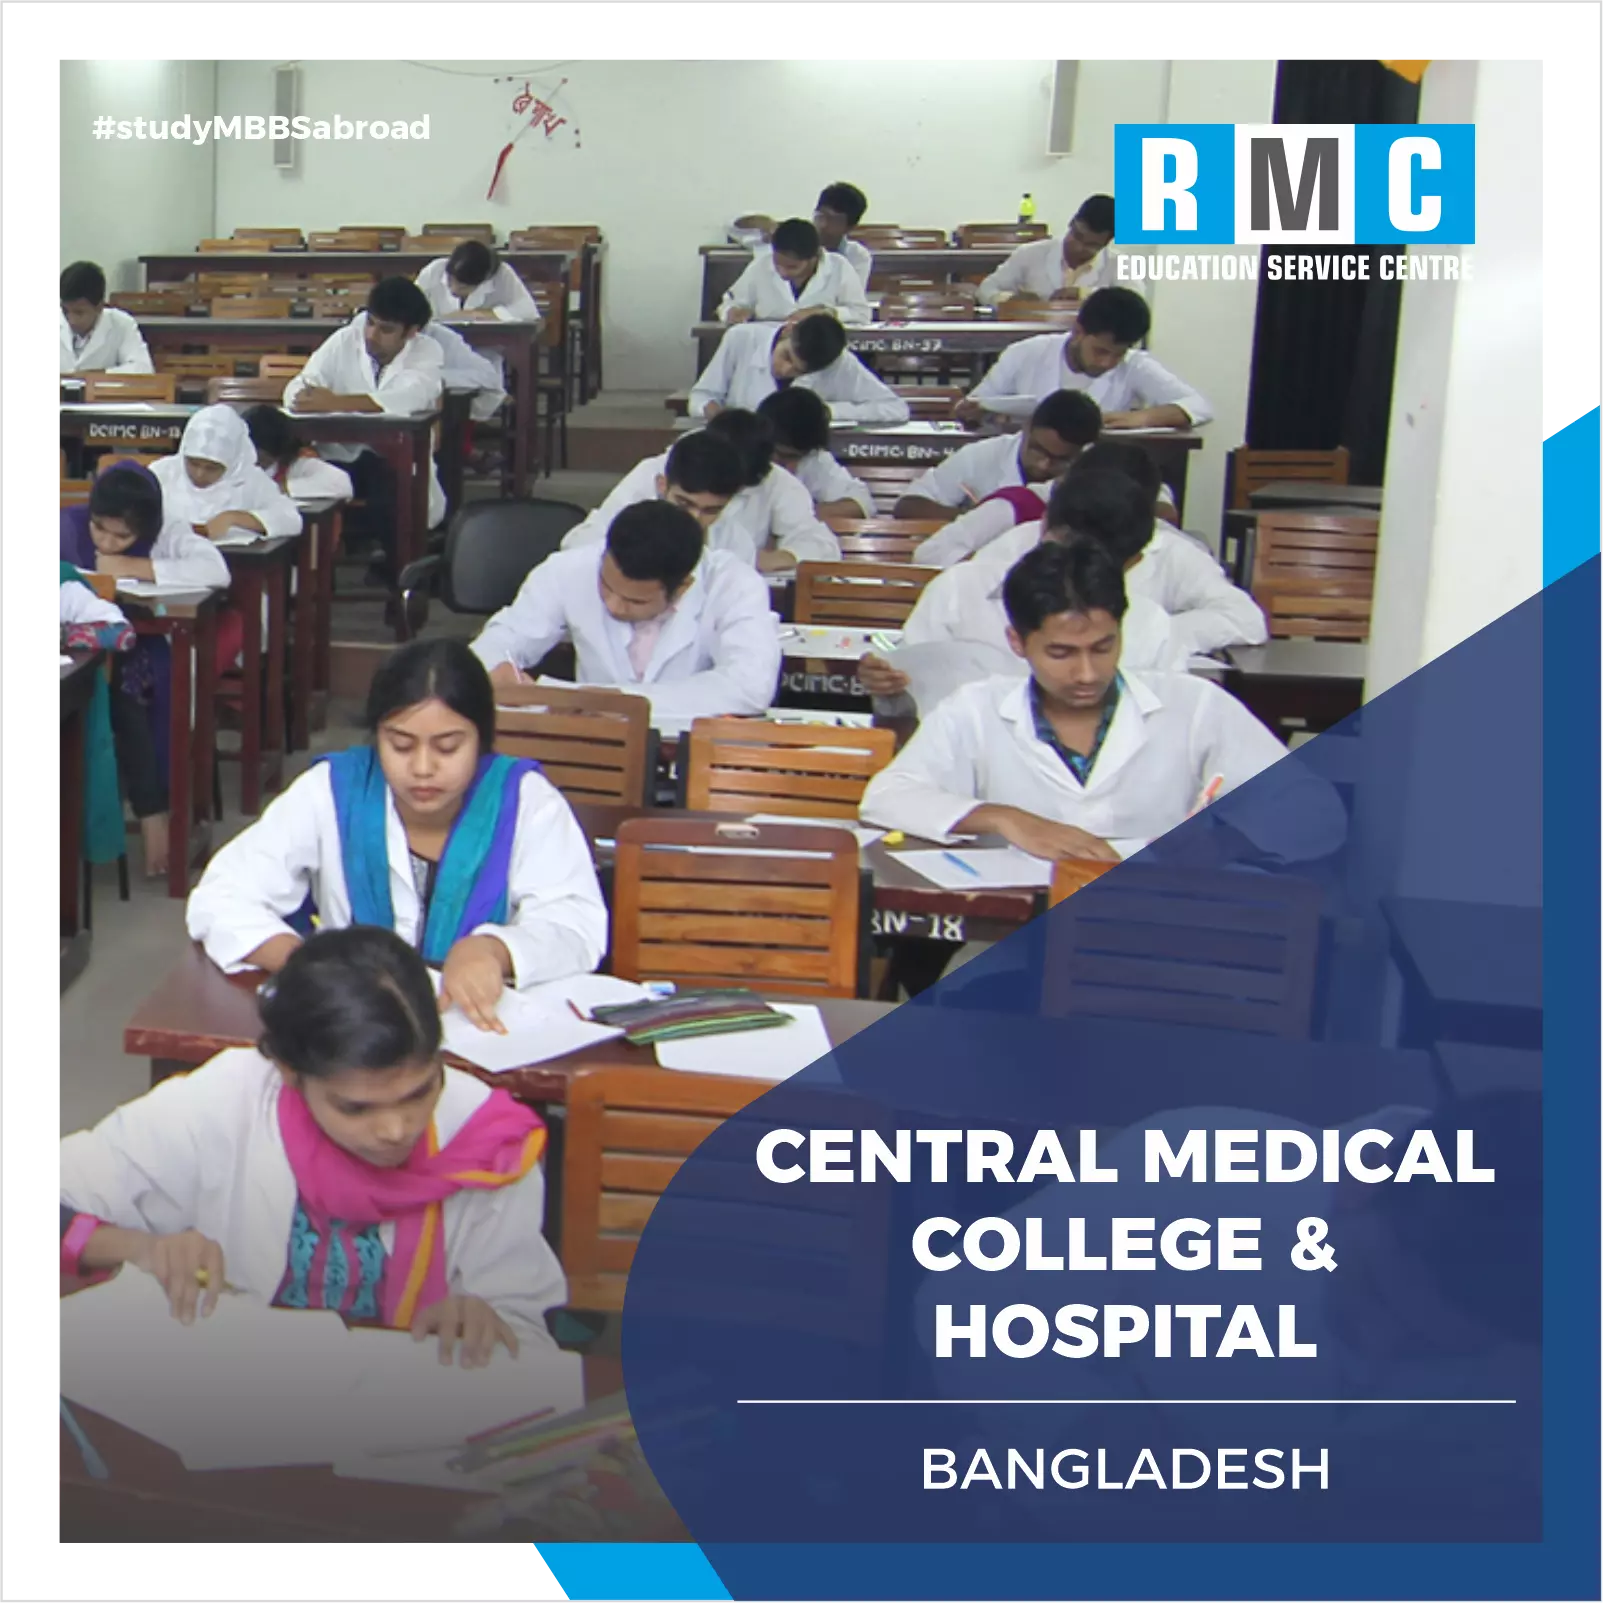 Central Medical College & Hospital